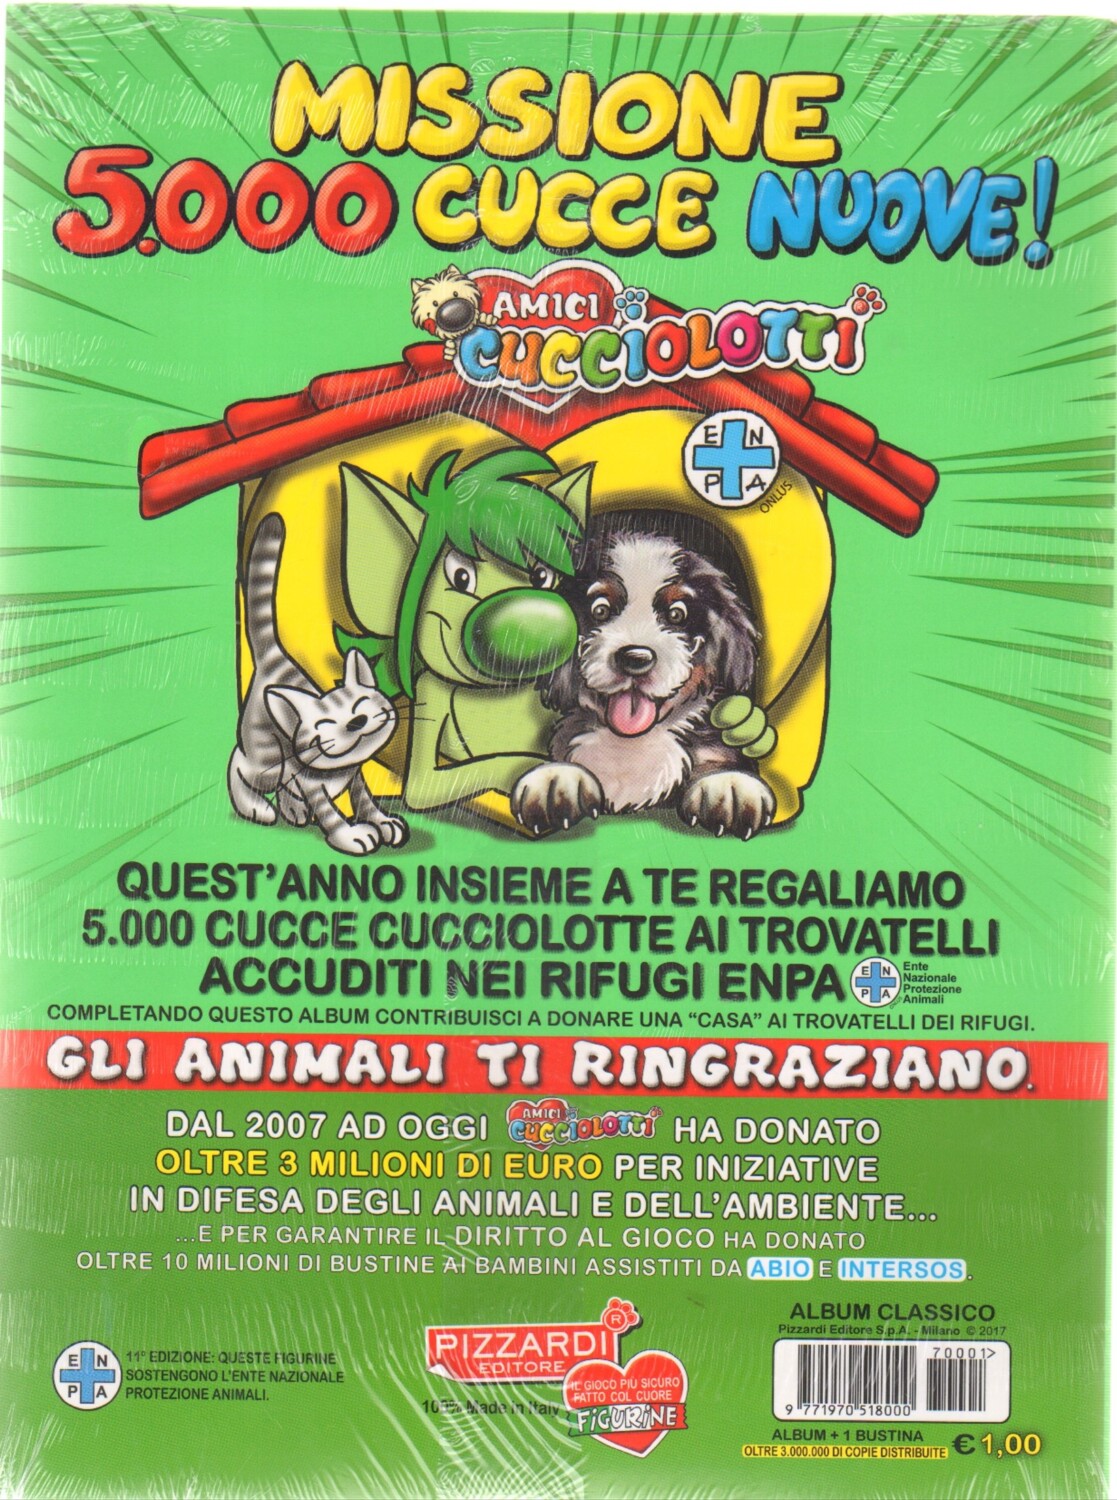 Album e figurine Amici Cucciolotti 2017 gratis - OmaggioMania